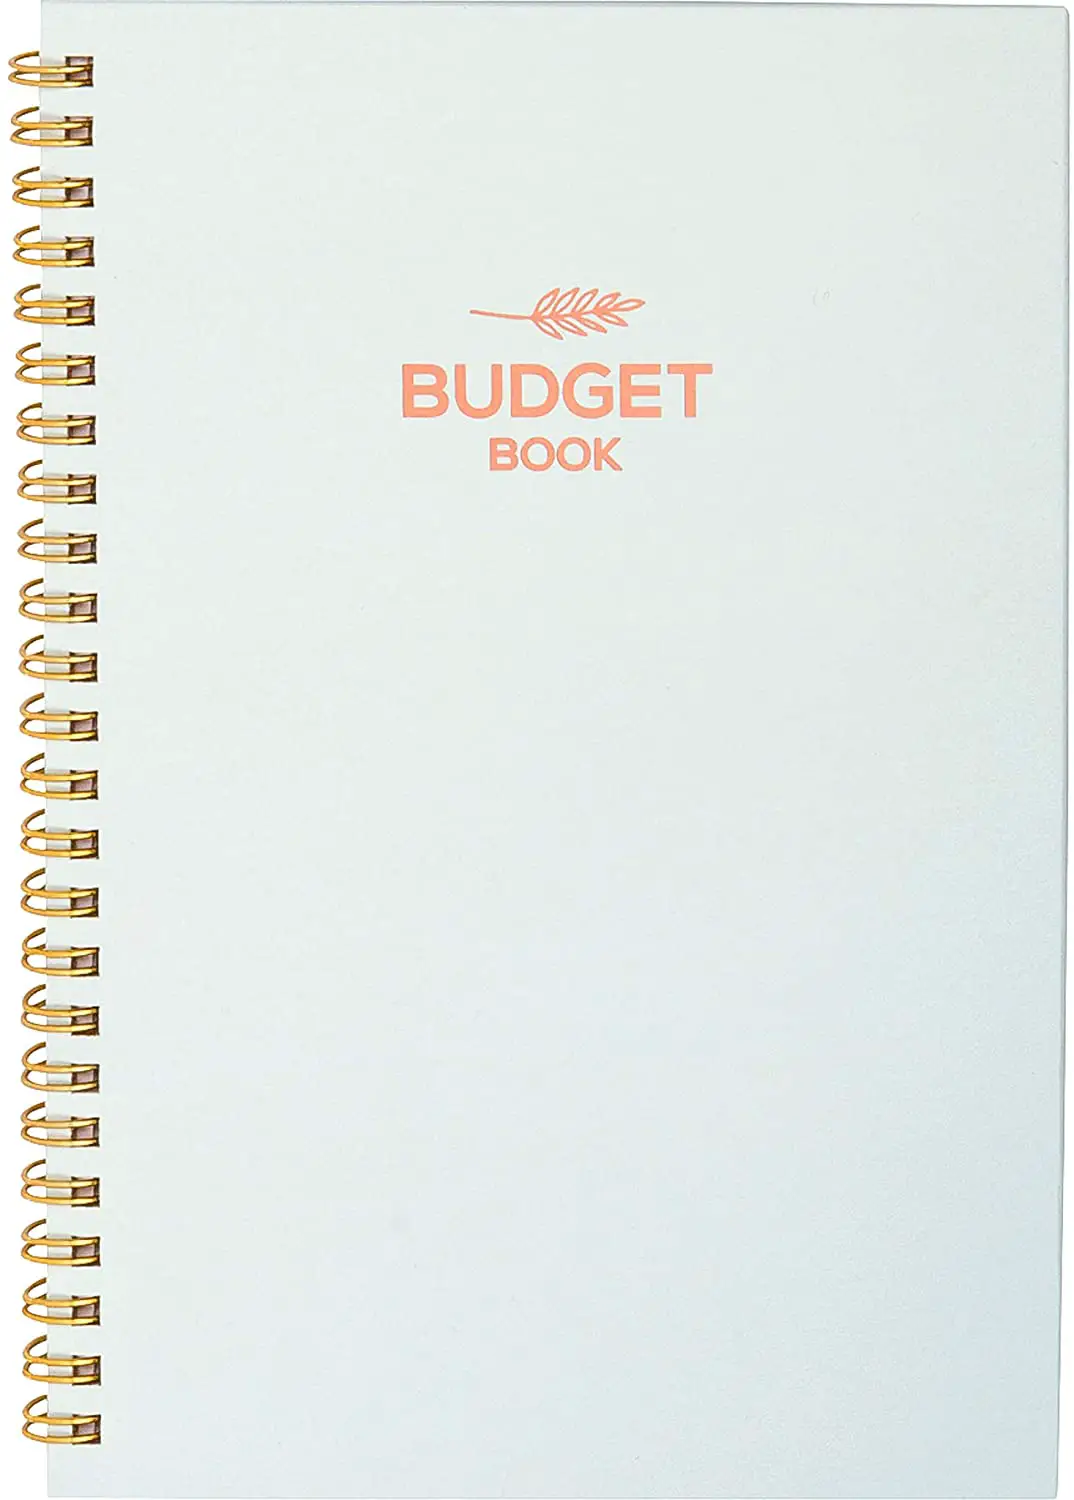 money budget planner book